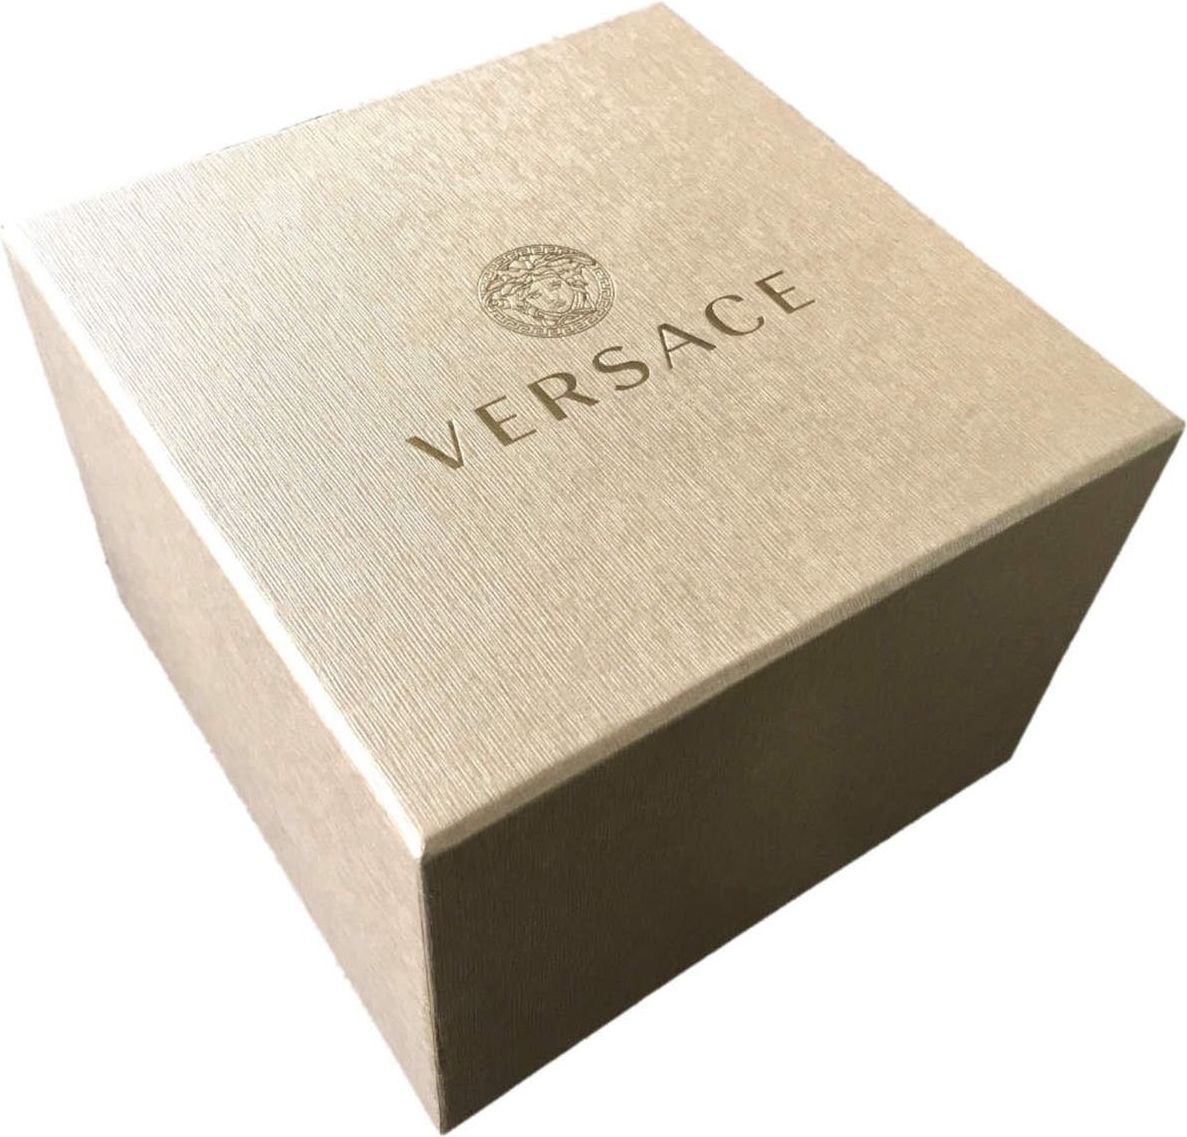 Versace VE2E00421 New Chrono horloge 45 mm Groen